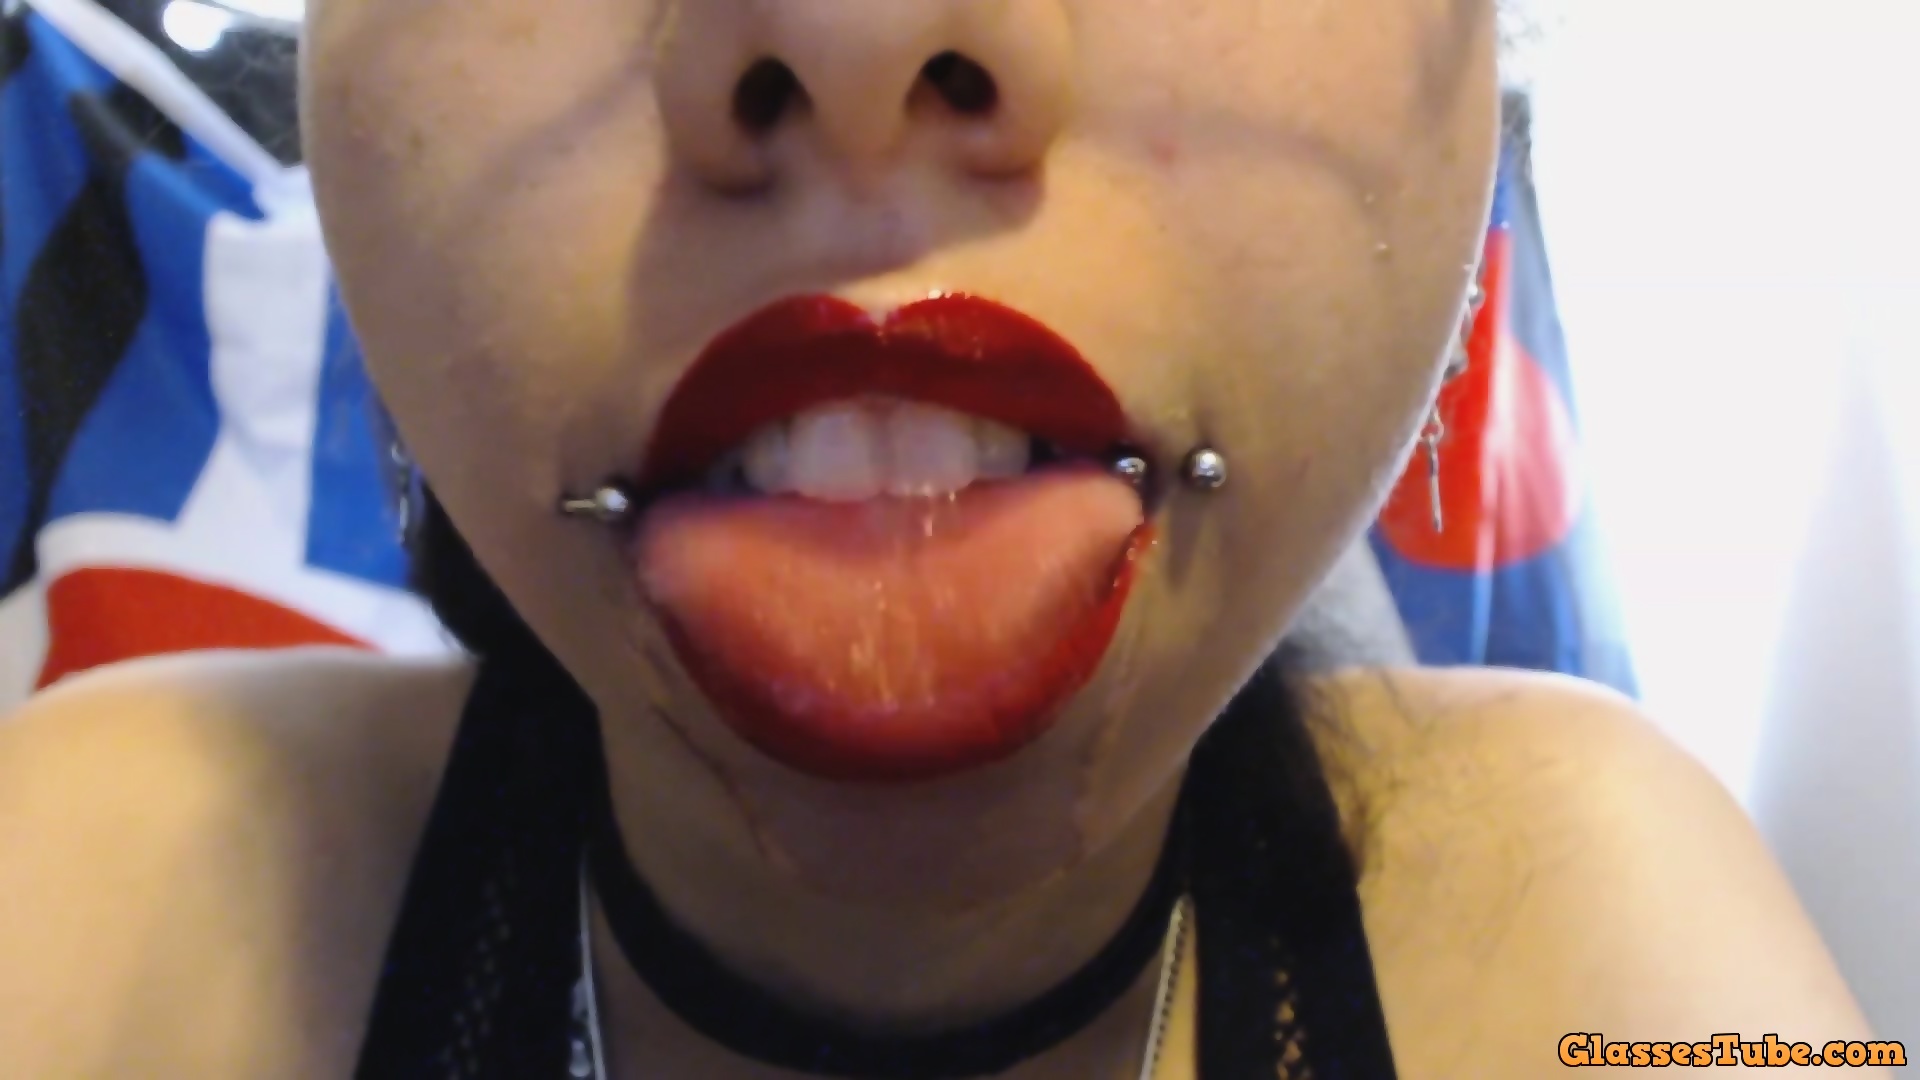 Jessica R. reccomend drooling saliva spit bright lipstick